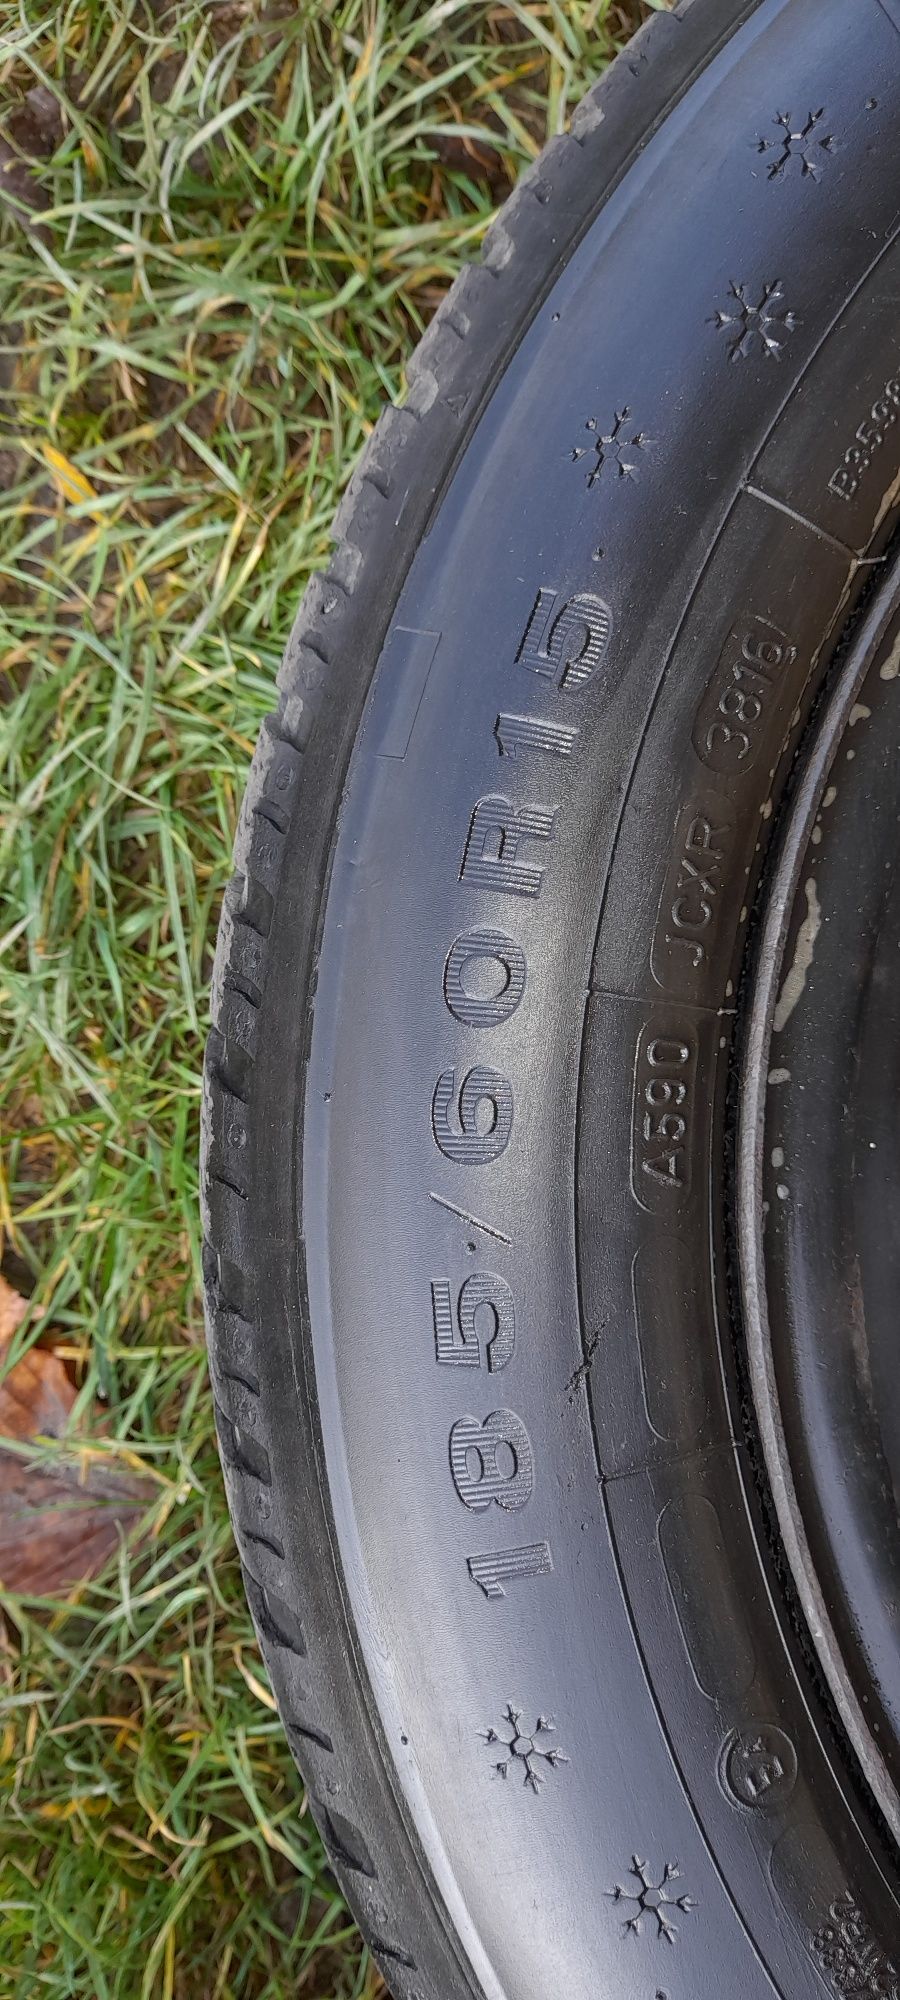 Opony z felgami zima 185/60/15 Dunlop m+s